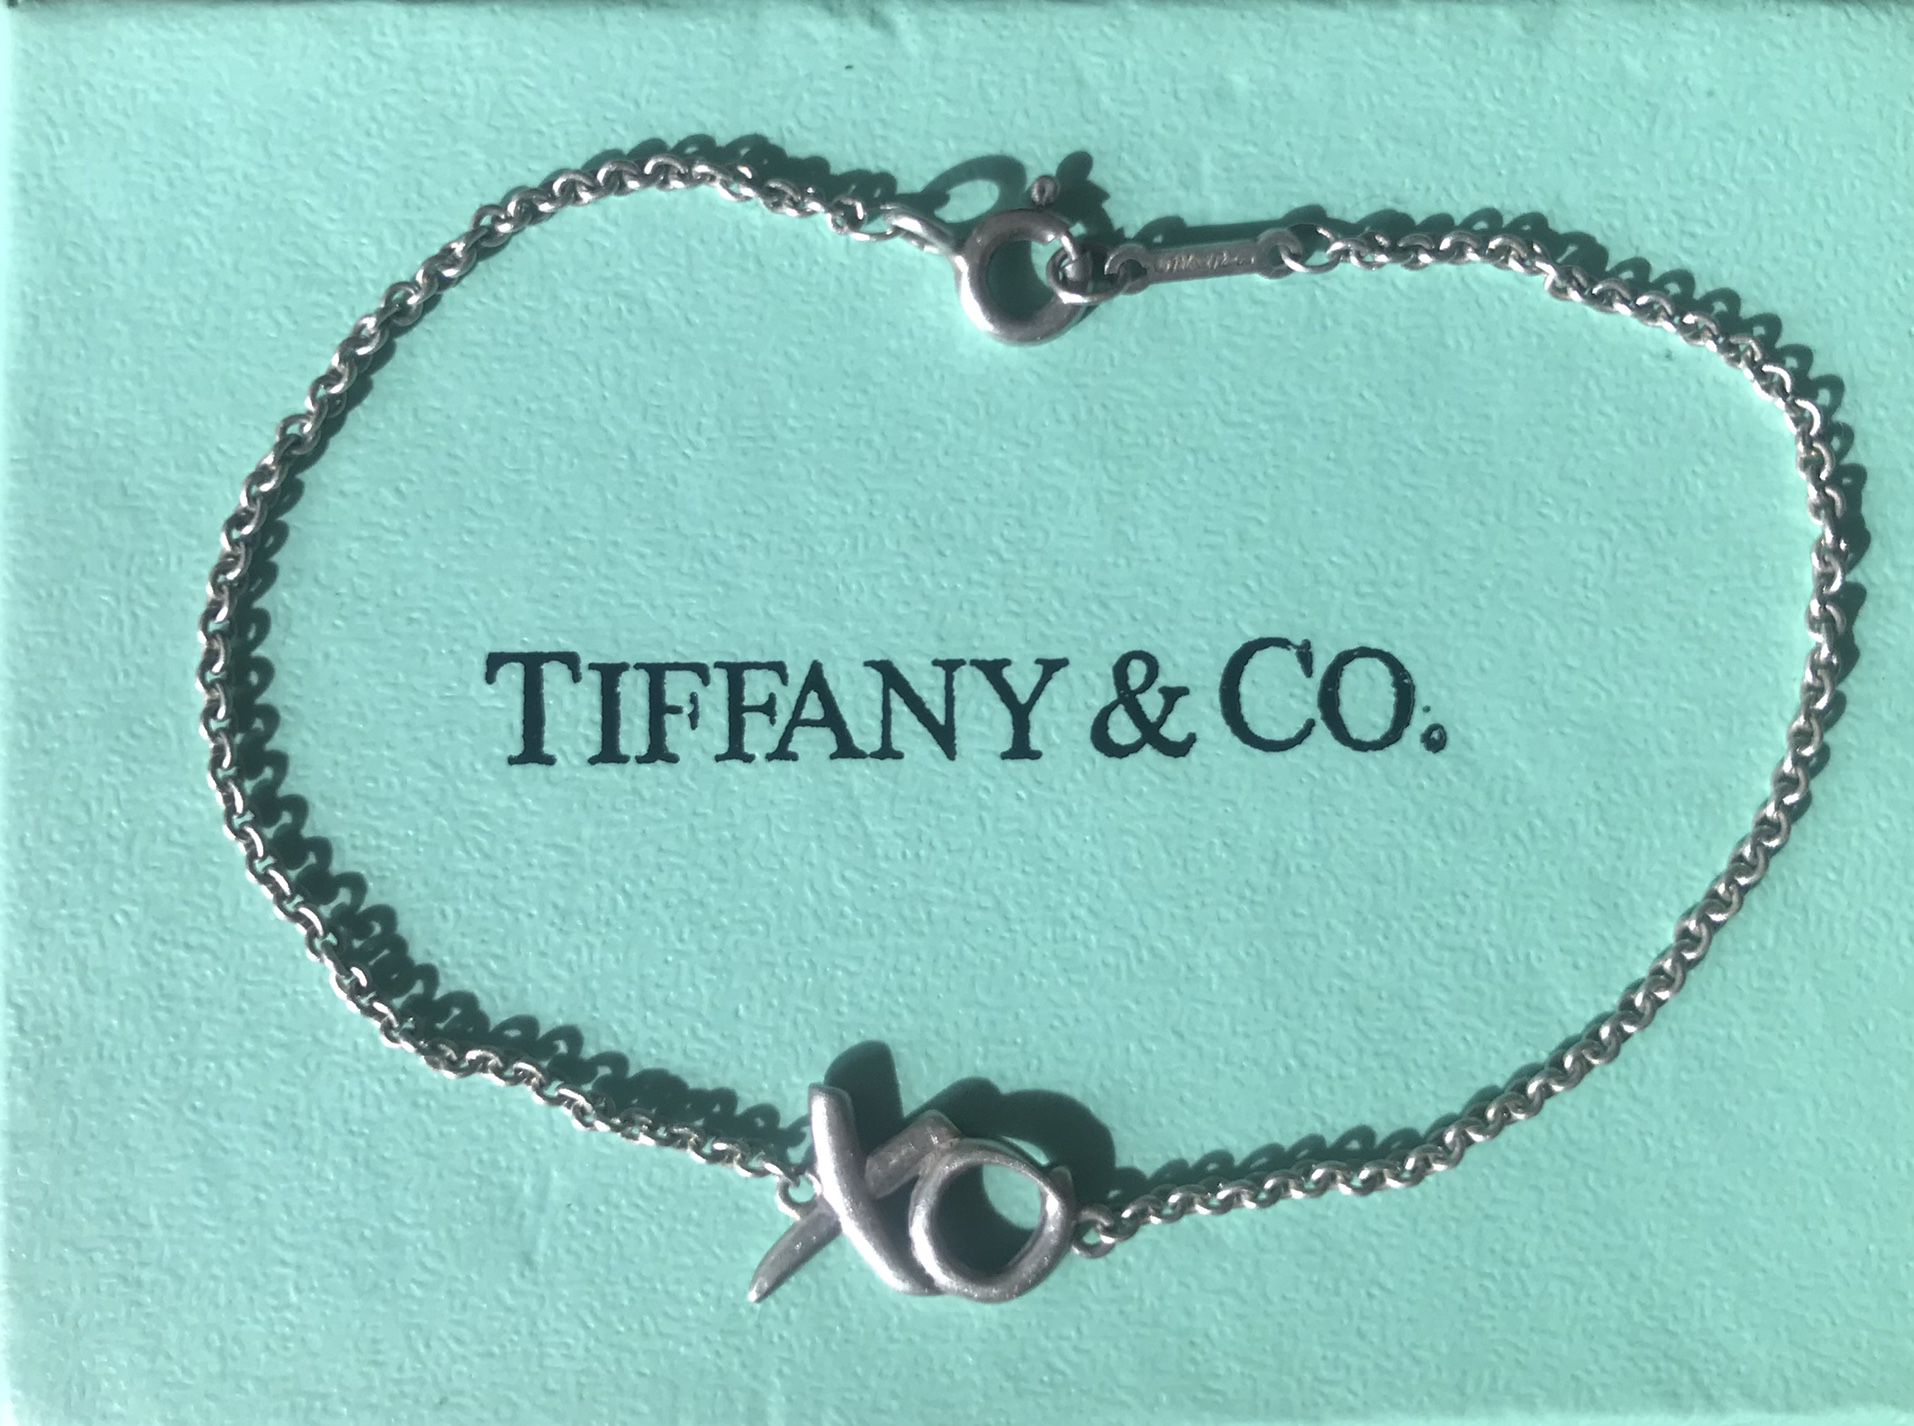 Tiffany Paloma Picasso XO kisses and hugs bracelet